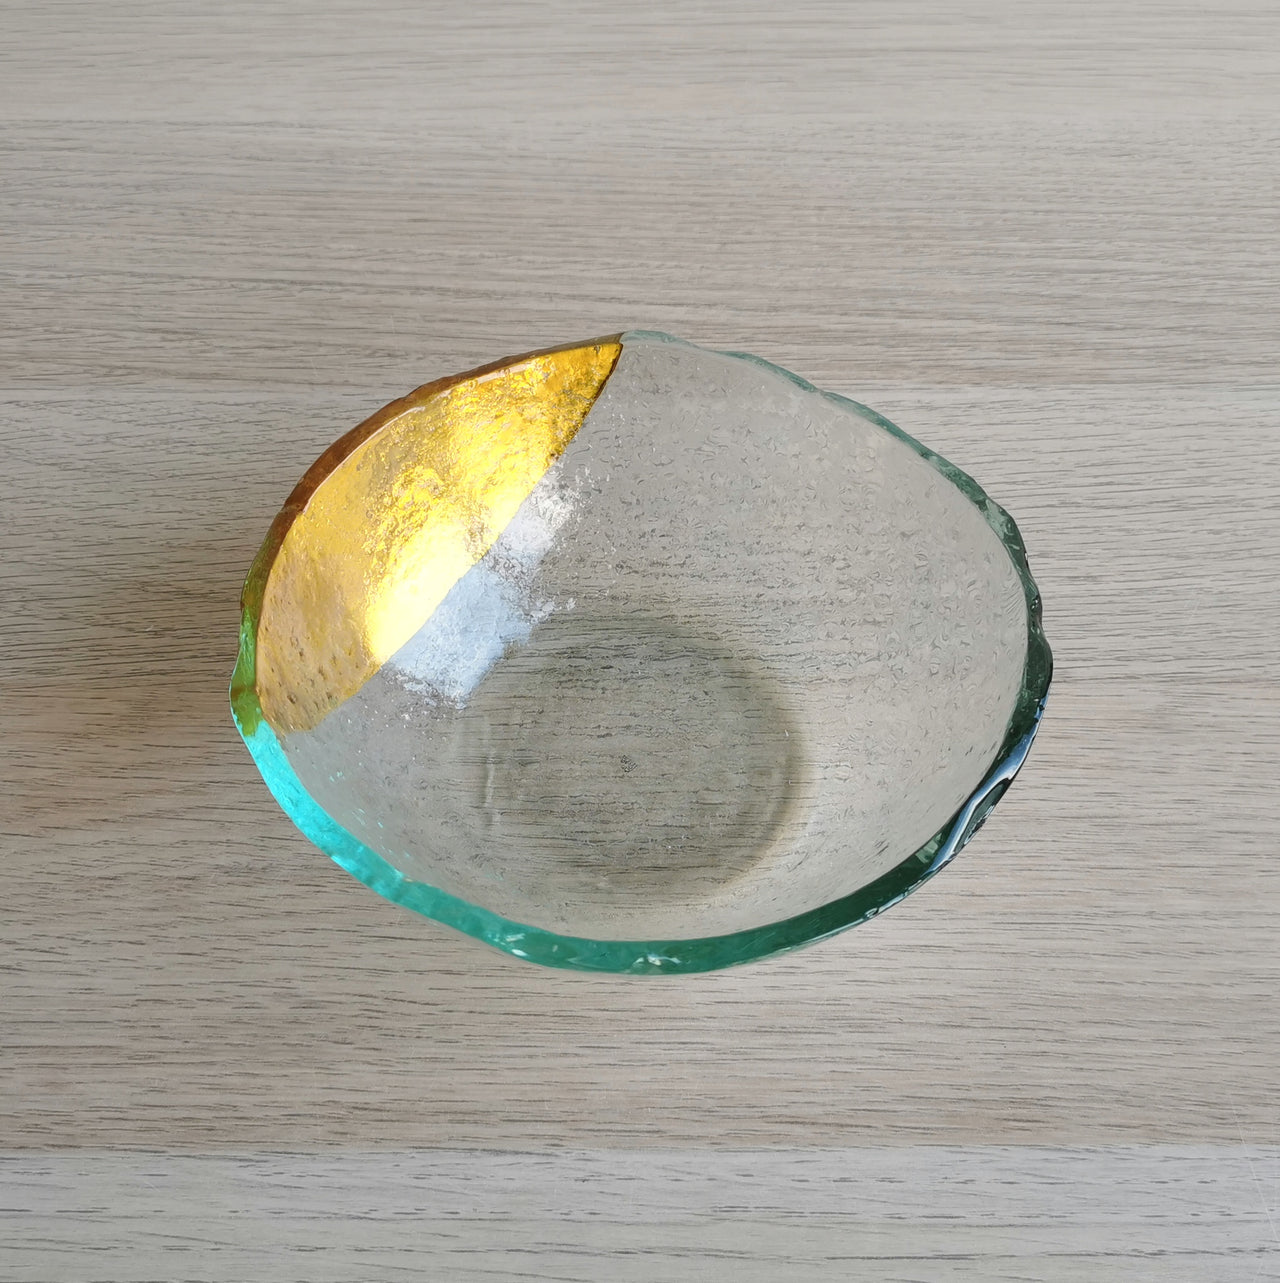 Vanilla Minimalist Transparent&Gold Glass Bowl. Transparent&Gold Glass Cereal Bowl - 5 15/16" (15cm.)